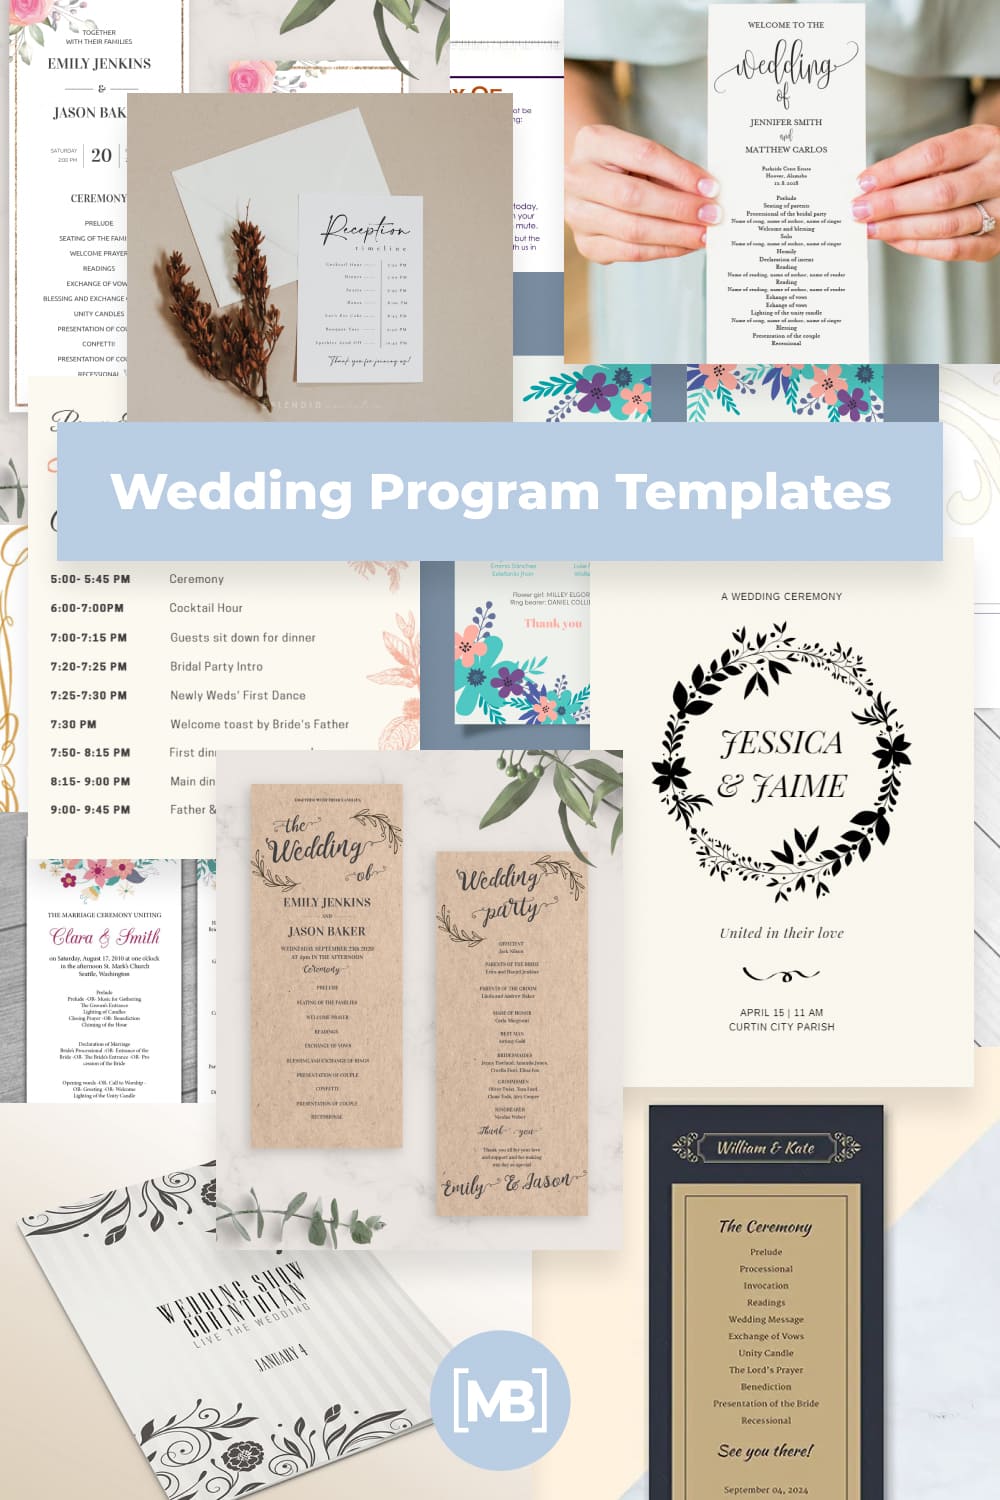 Wedding Program Templates Pinterest.